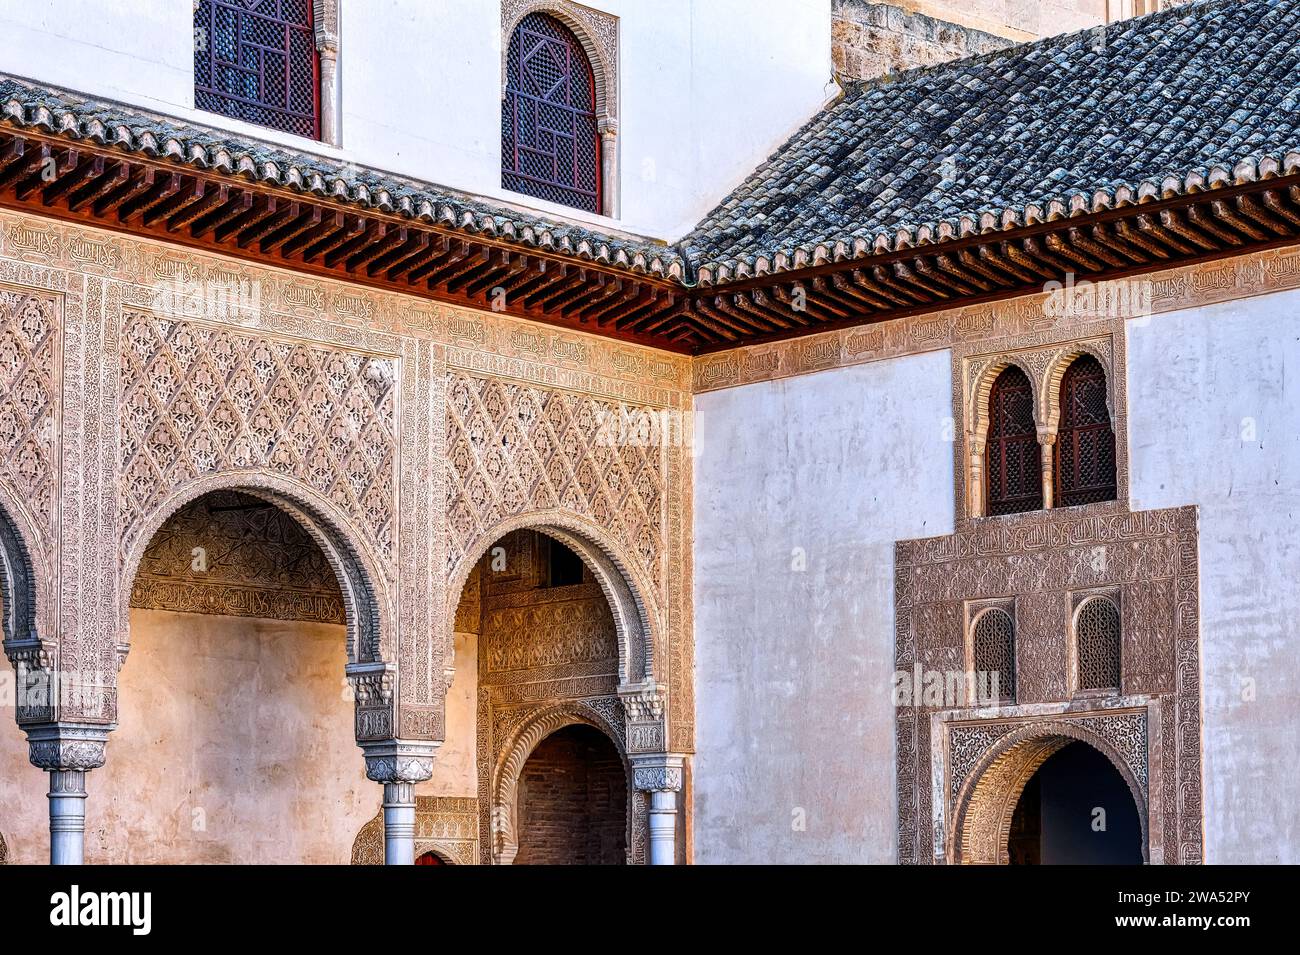 Archi e colonne nelle mura di un cortile, Alhambra, Spagna. Il luogo medievale è un sito patrimonio dell'umanità dell'UNESCO Foto Stock